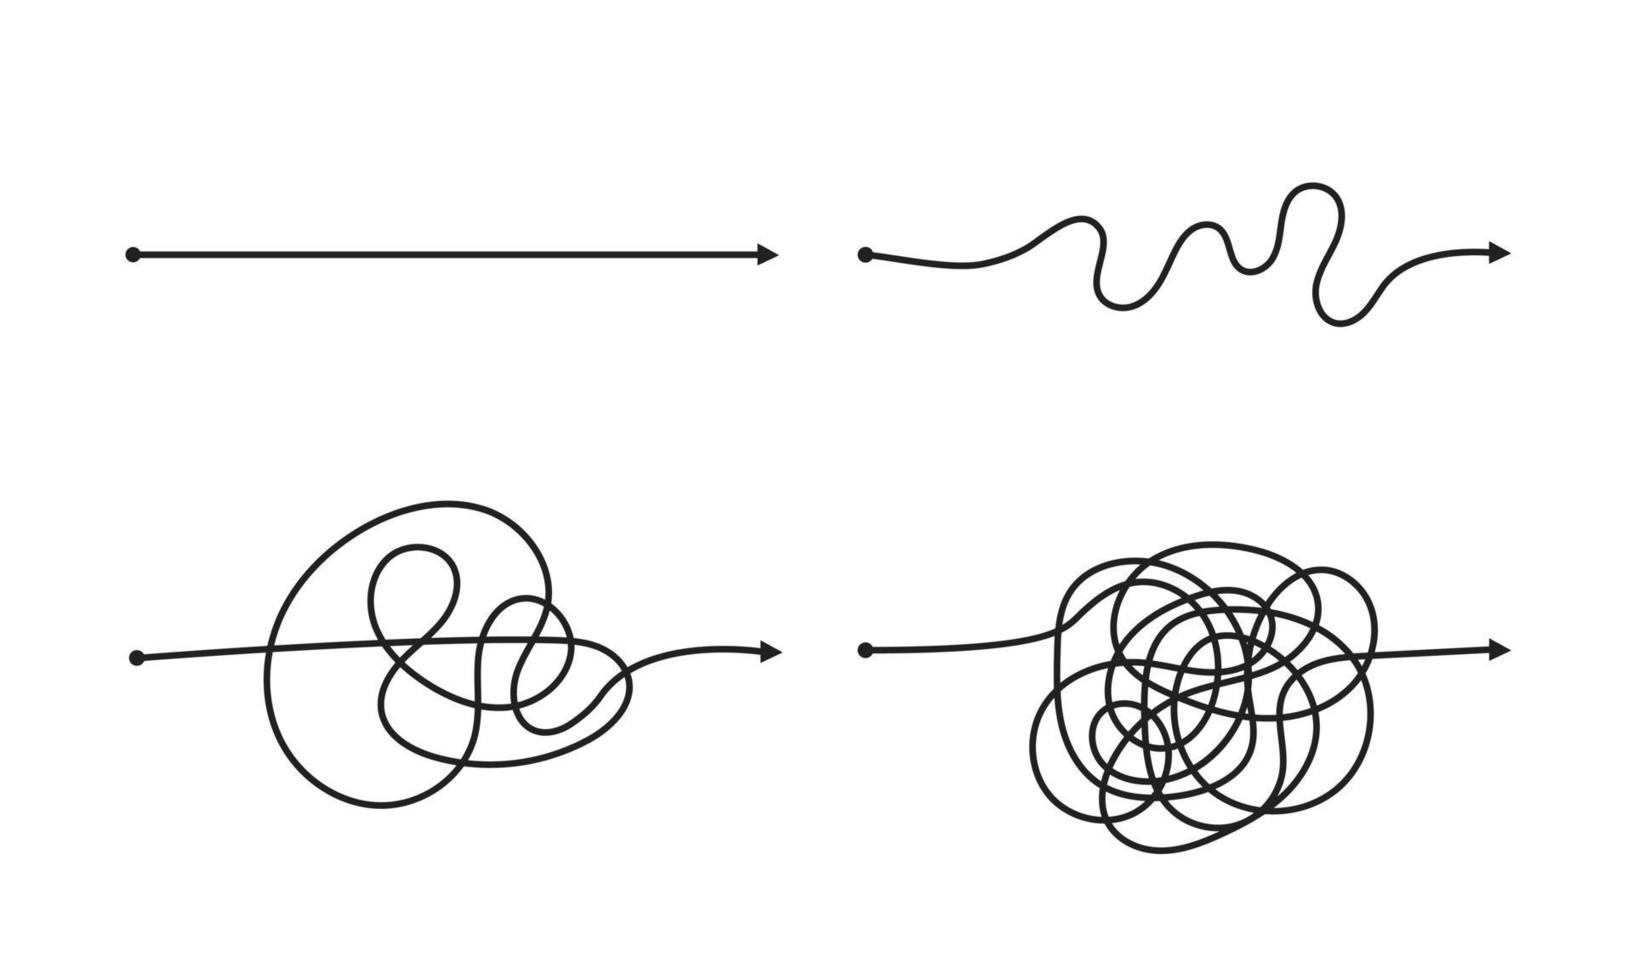 modo semplice e complesso dall'inizio alla fine del set di illustrazioni vettoriali. vettore